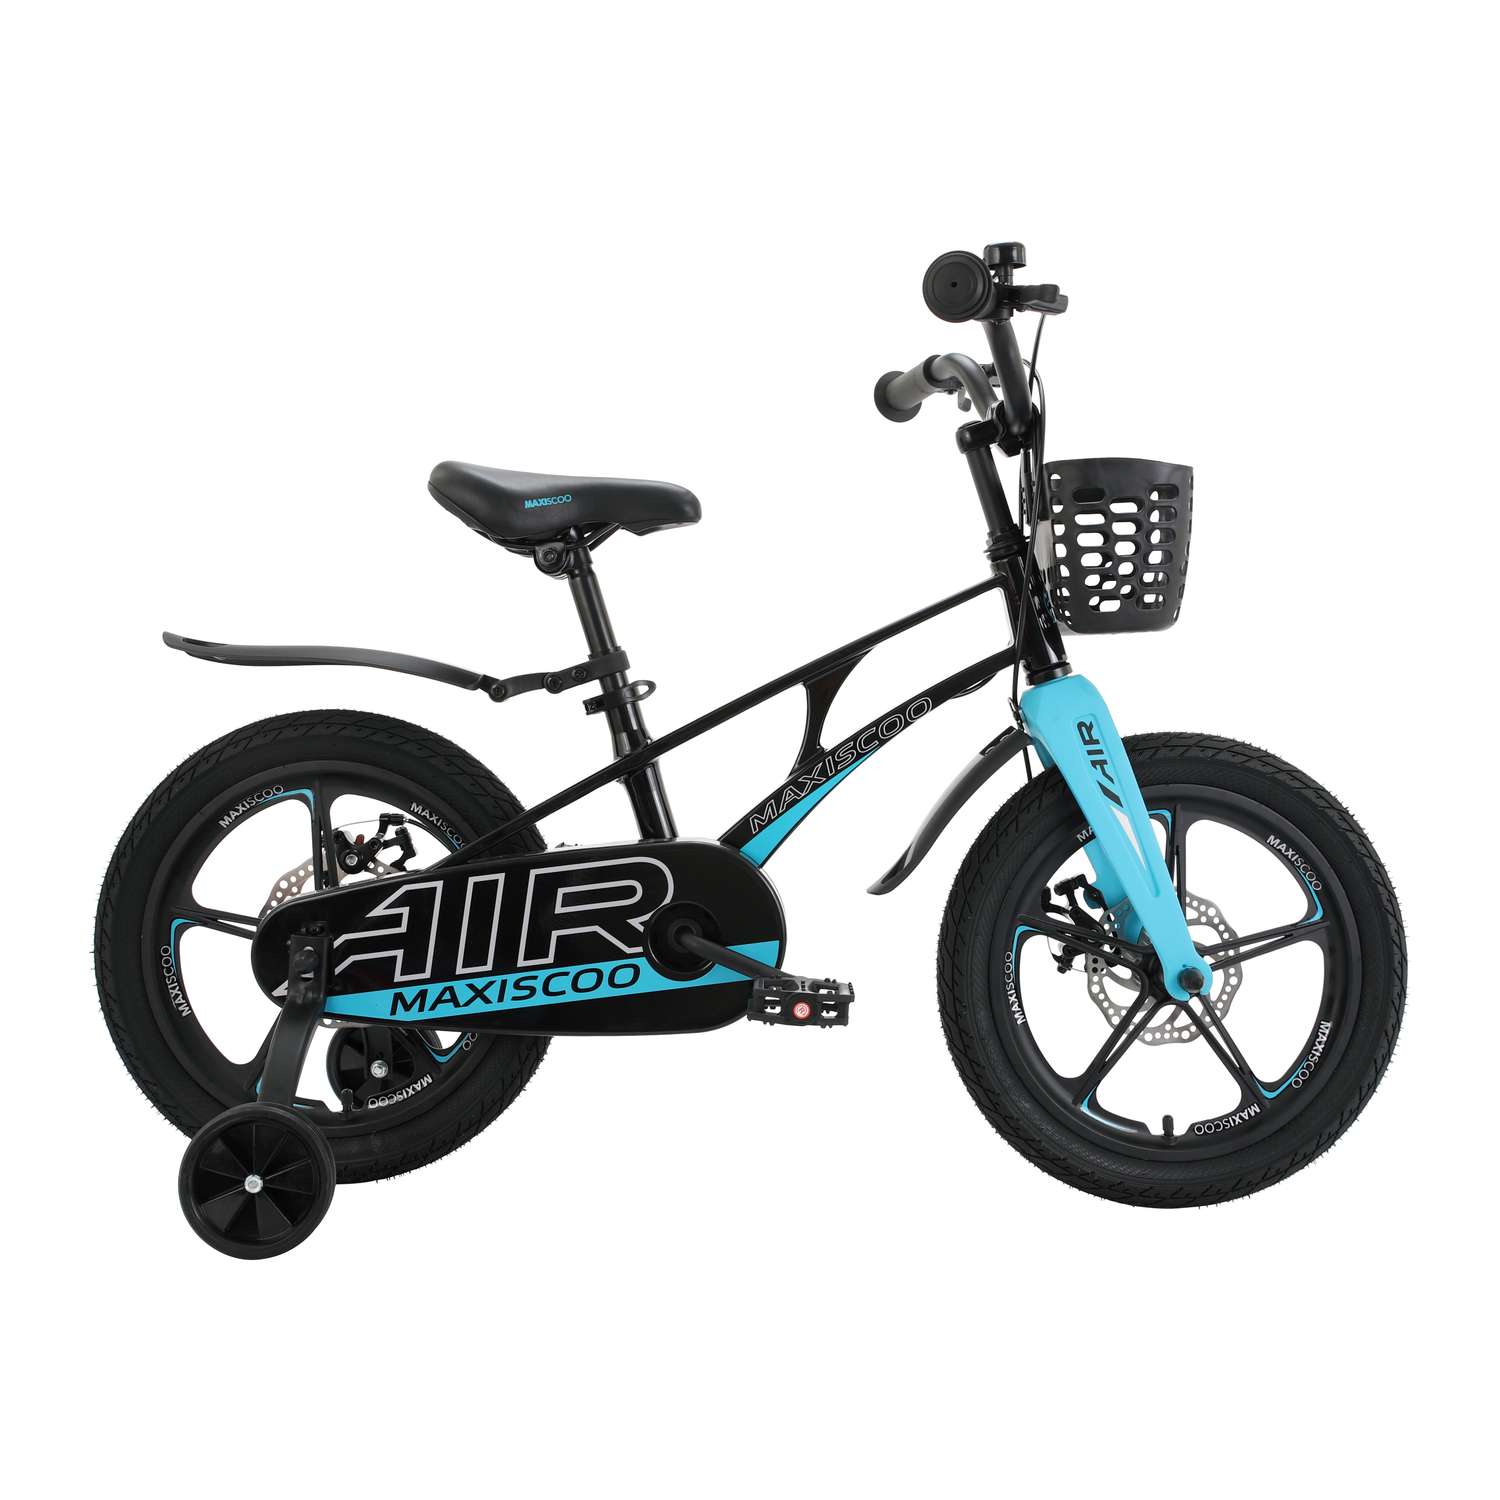 Детский двухколесный велосипед Maxiscoo Airделюкс плюс 16 черный аметист - фото 6